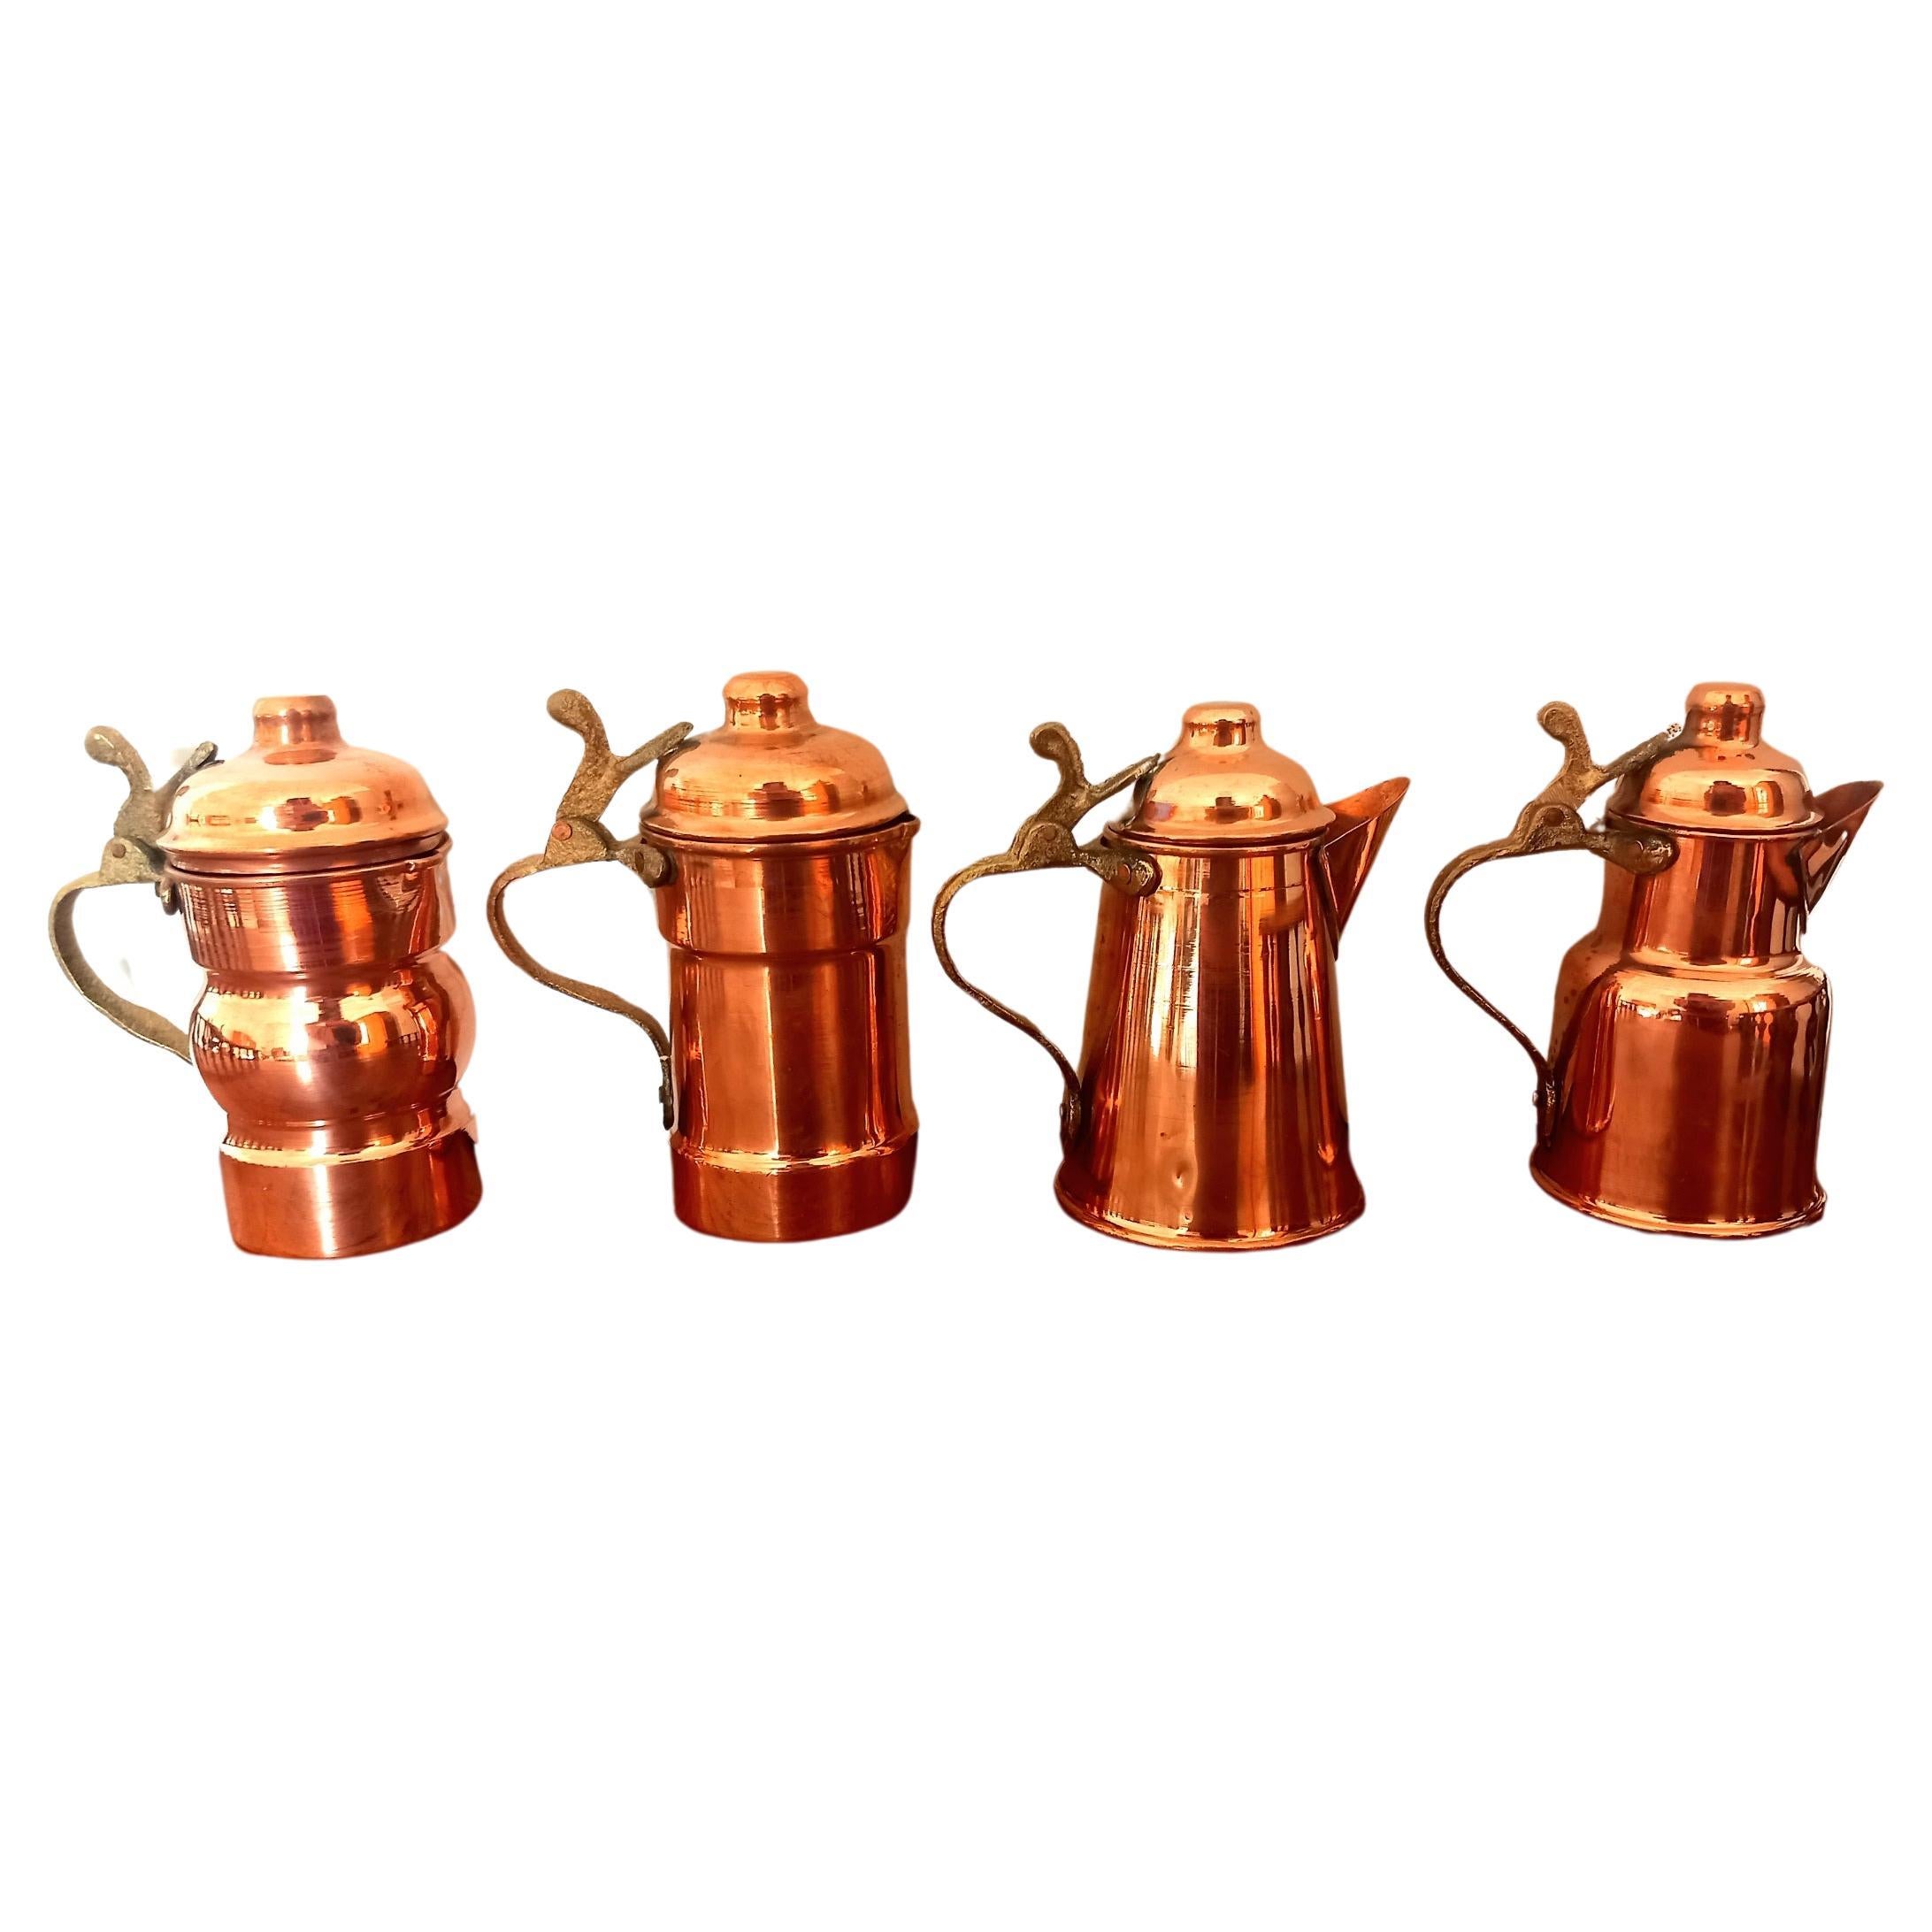  Kupfer Küche Dekoration Vintage Couchtische für Rustikale Küche  Lot von vier verschiedenen